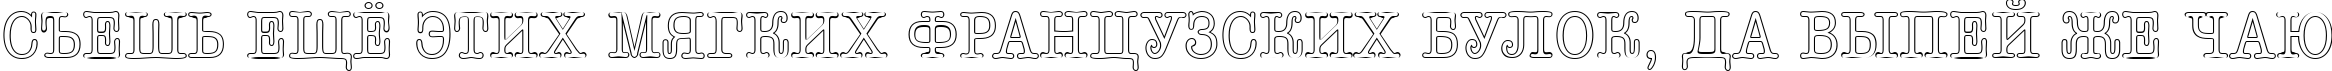 Пример написания шрифтом a_OldTyperTitulNrOtl текста на русском